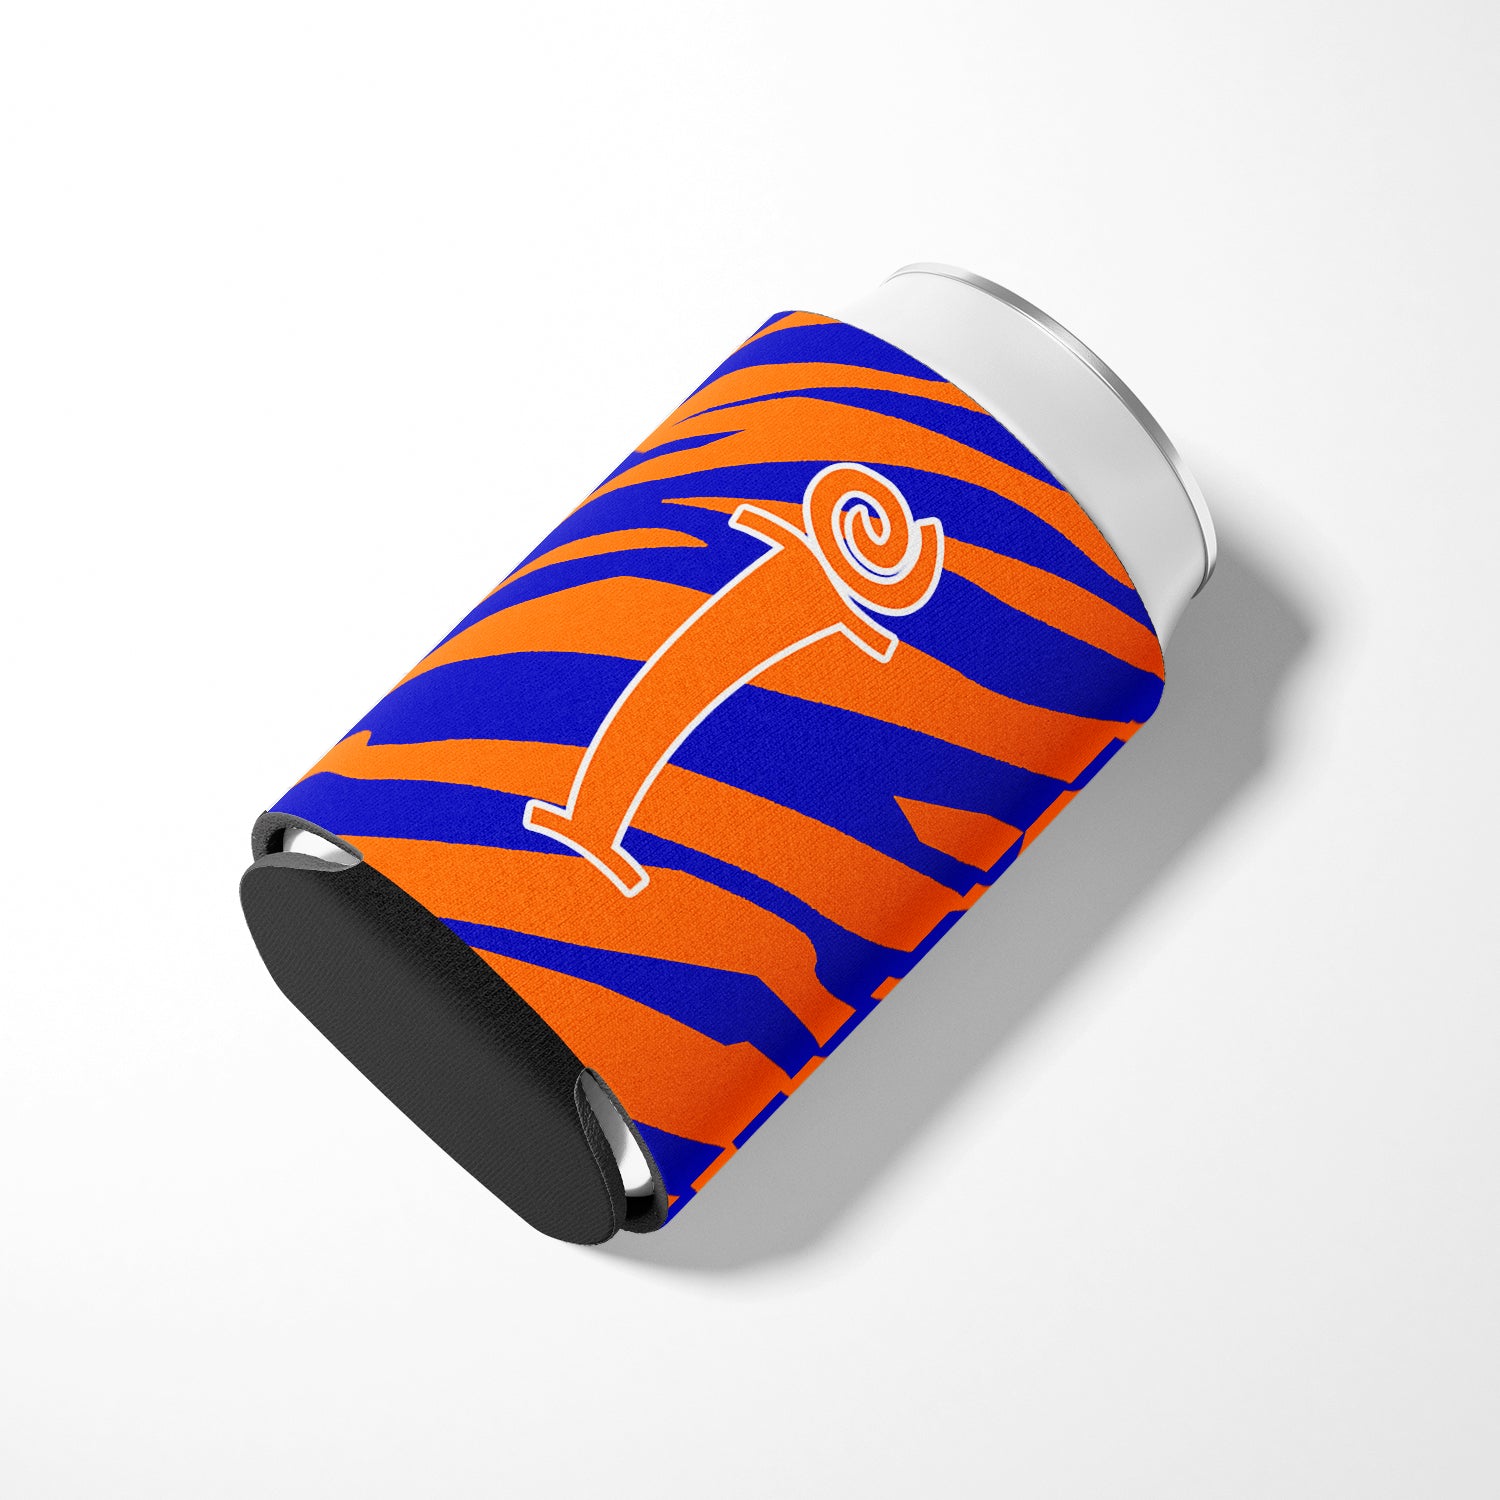 Letter I Initial Monogram - Tiger Stripe Blue and Orange Can Beverage Insulator Hugger.